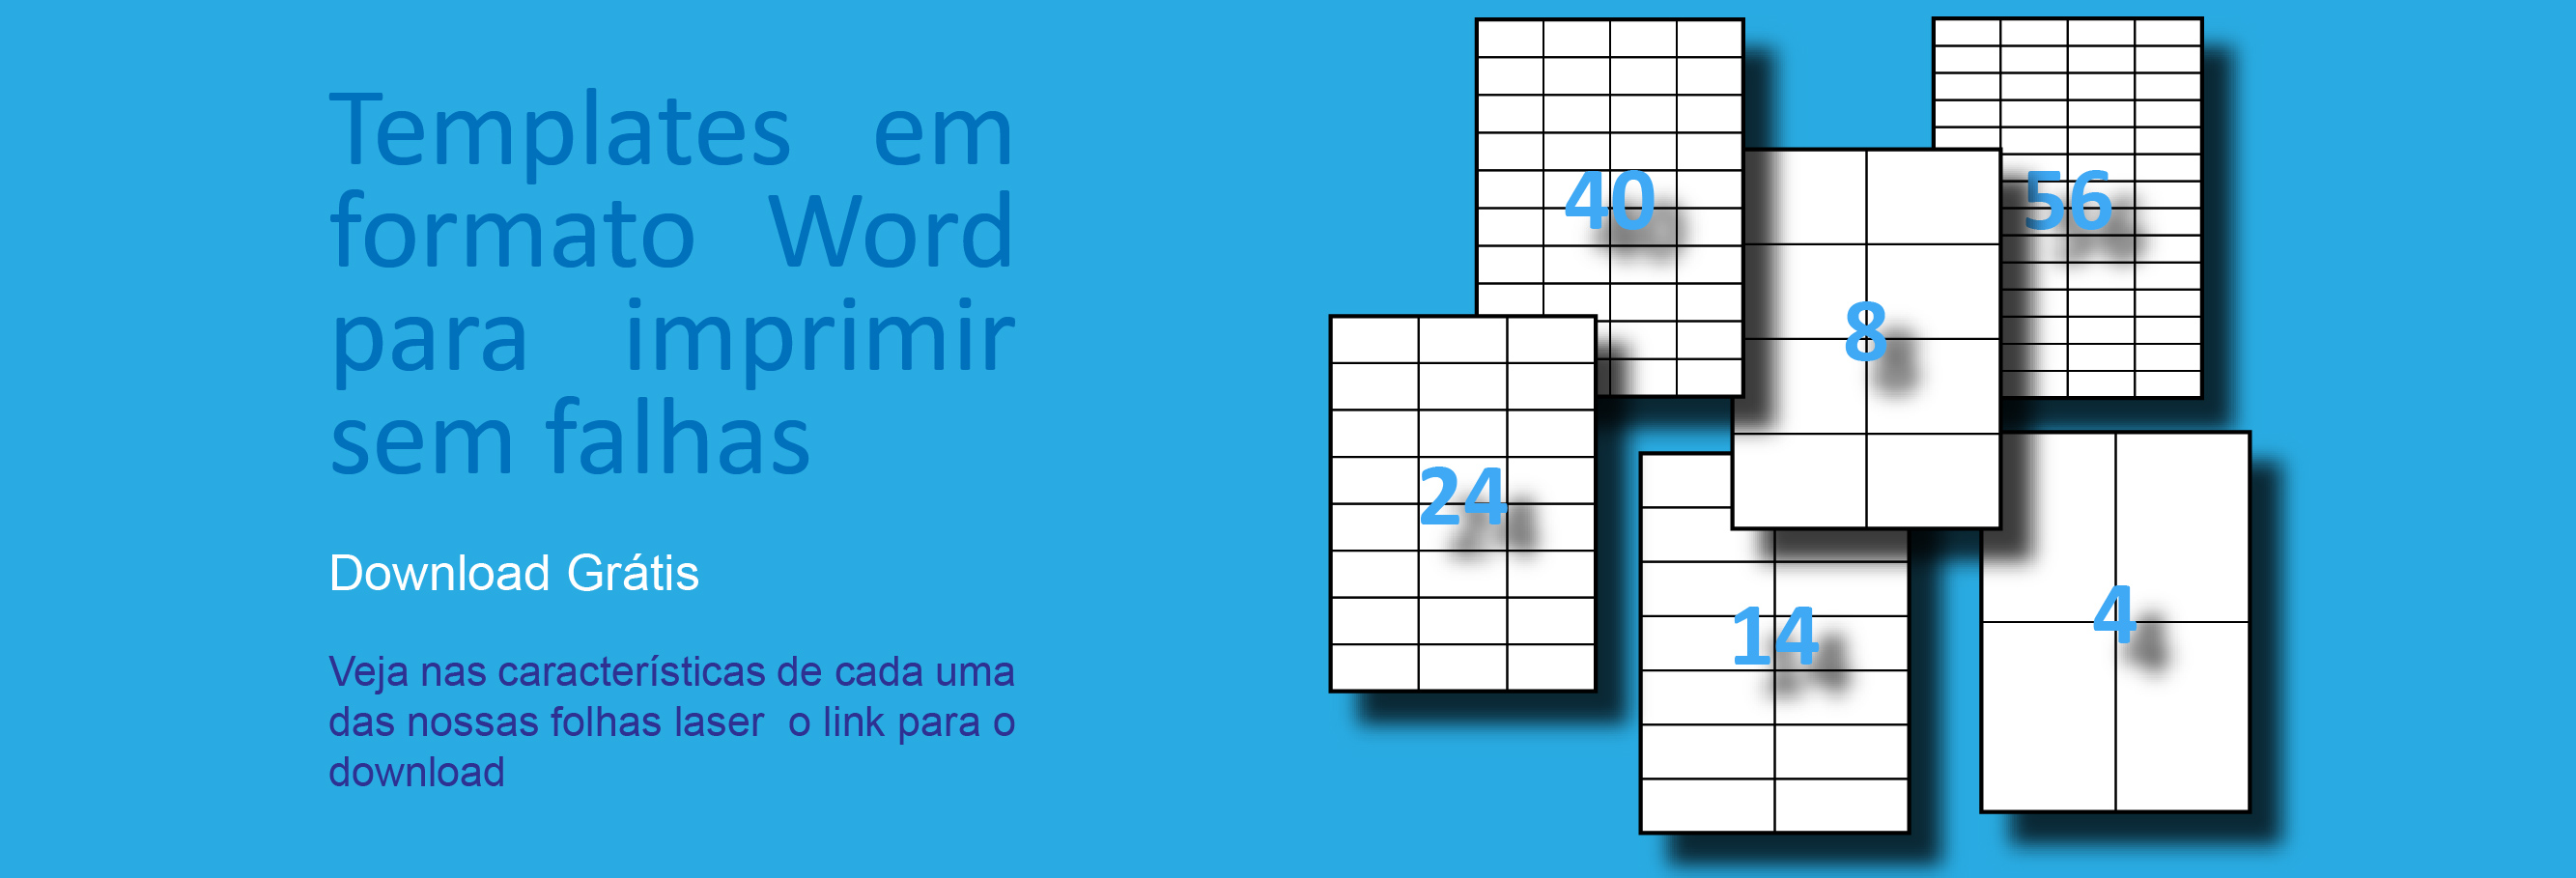 Templates Folha A4 para Download Gratis em formato Word